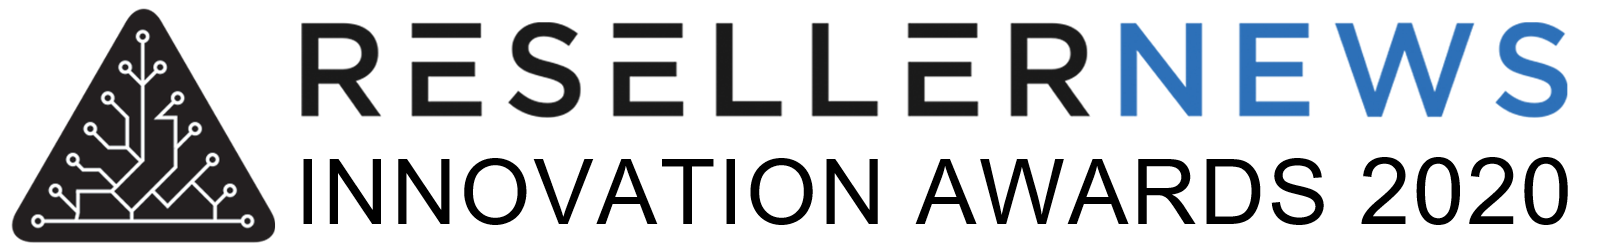 Reseller-News-Innovation-Awards-2020